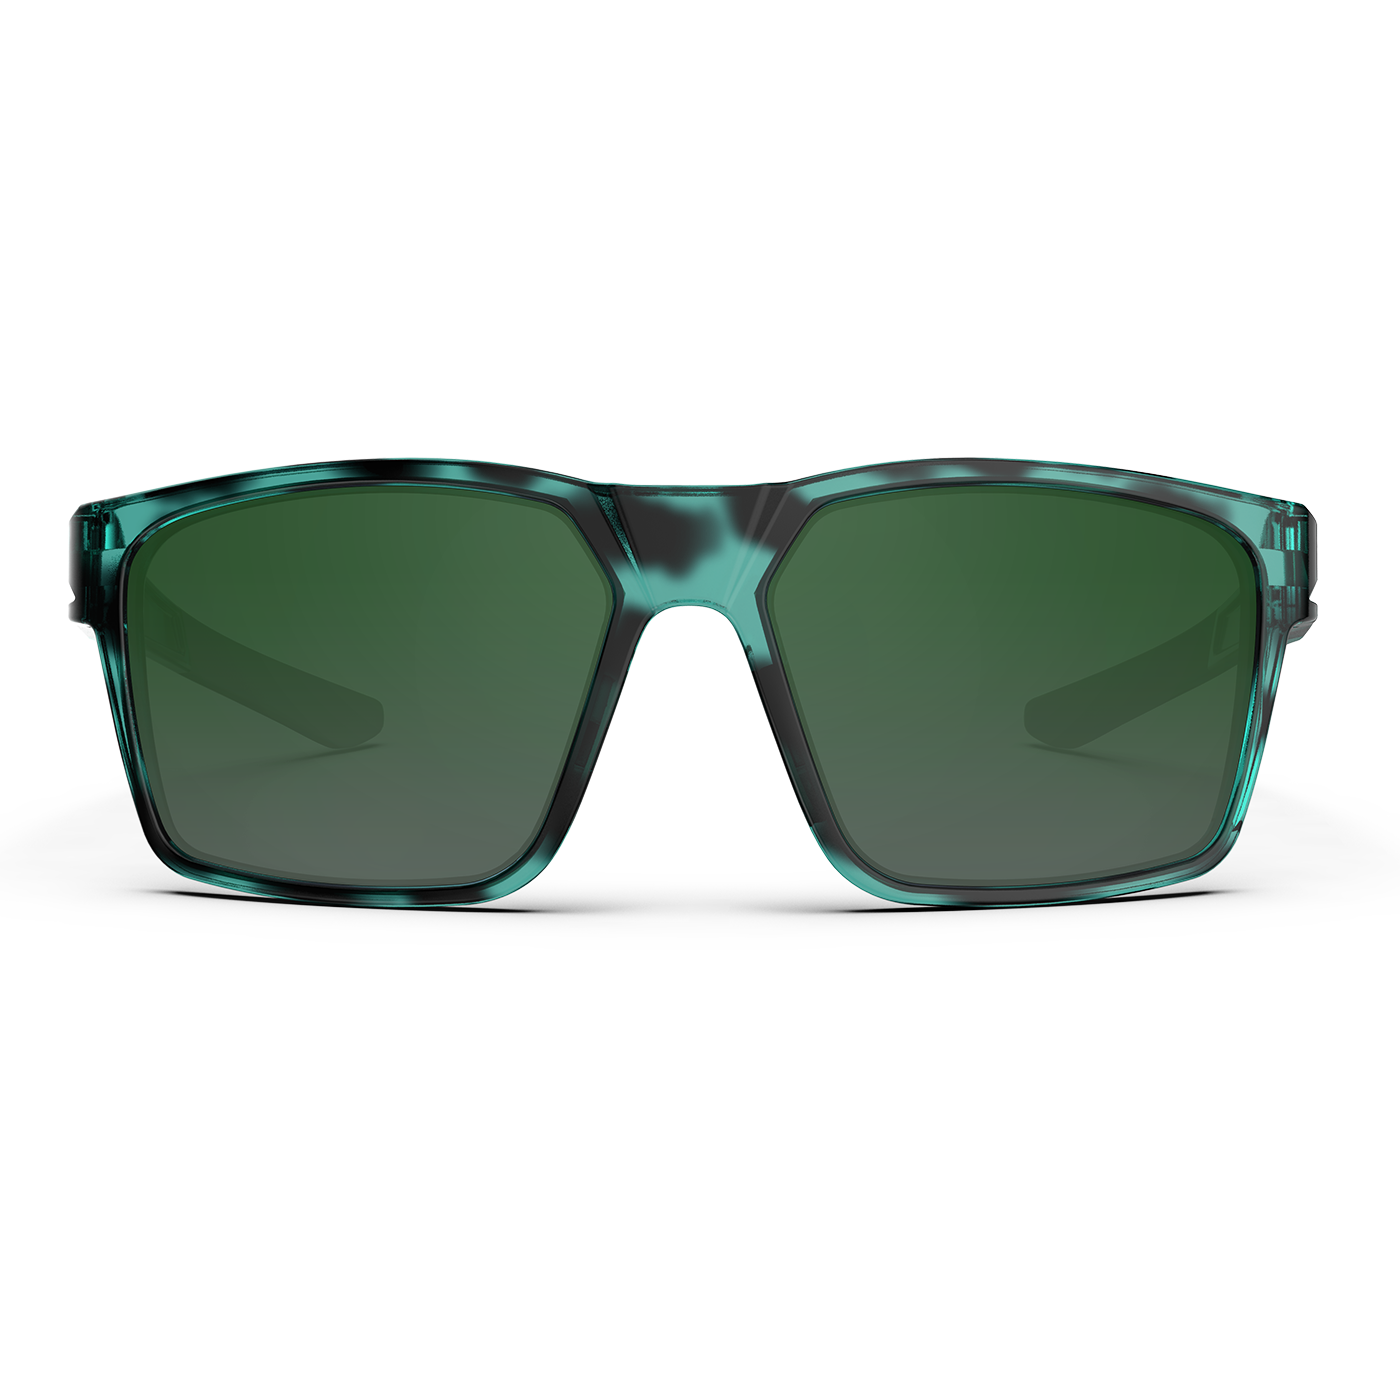 Storycoast Polarized Unisex Sports Sunglasses, Black Frame Blue Lenses